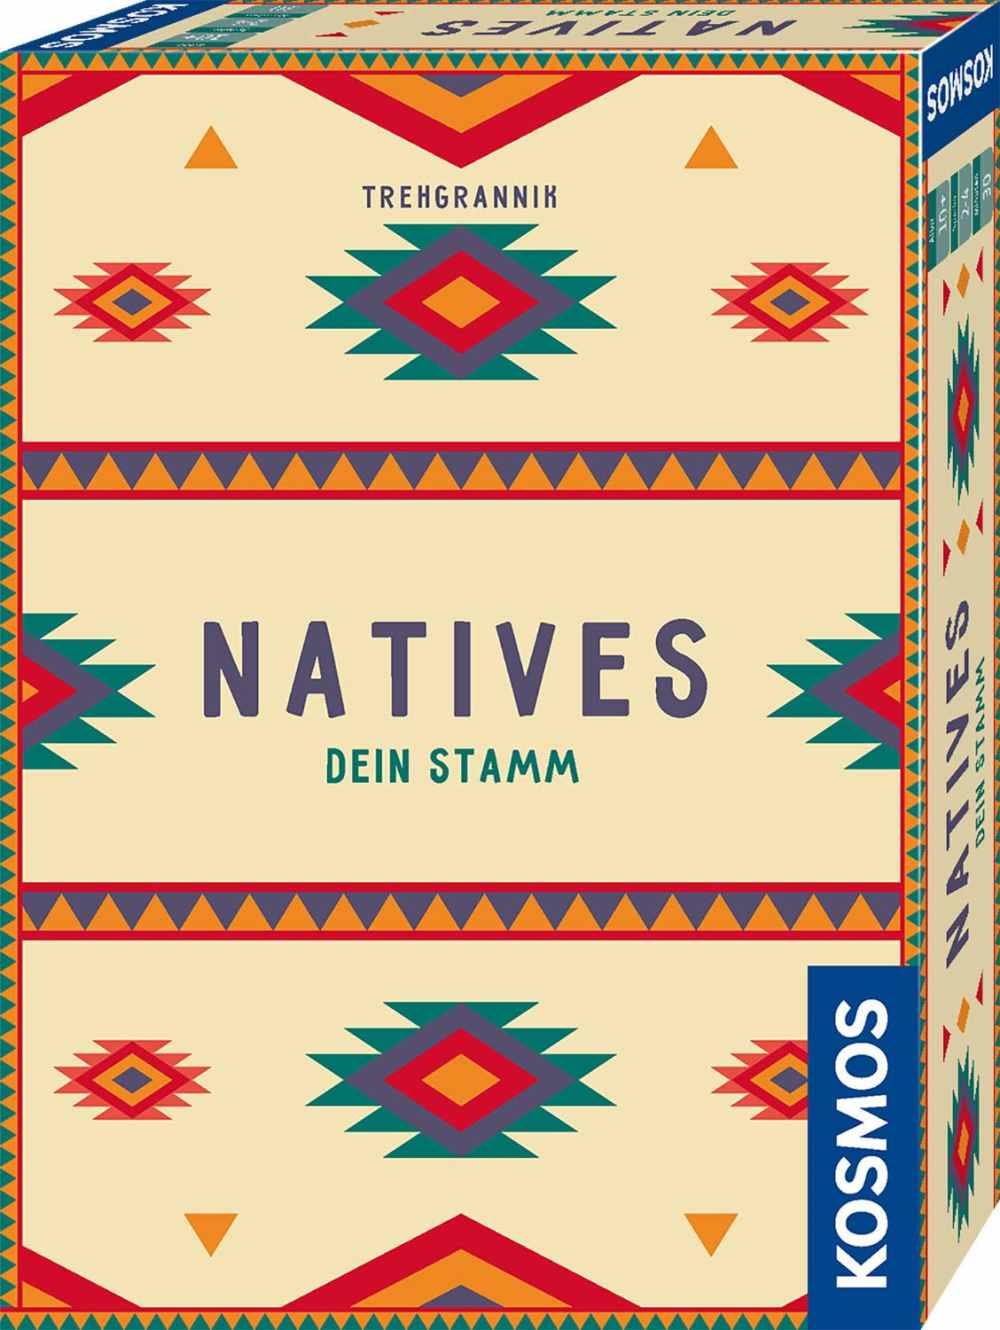 Natives – Dein Stamm 0 (0)